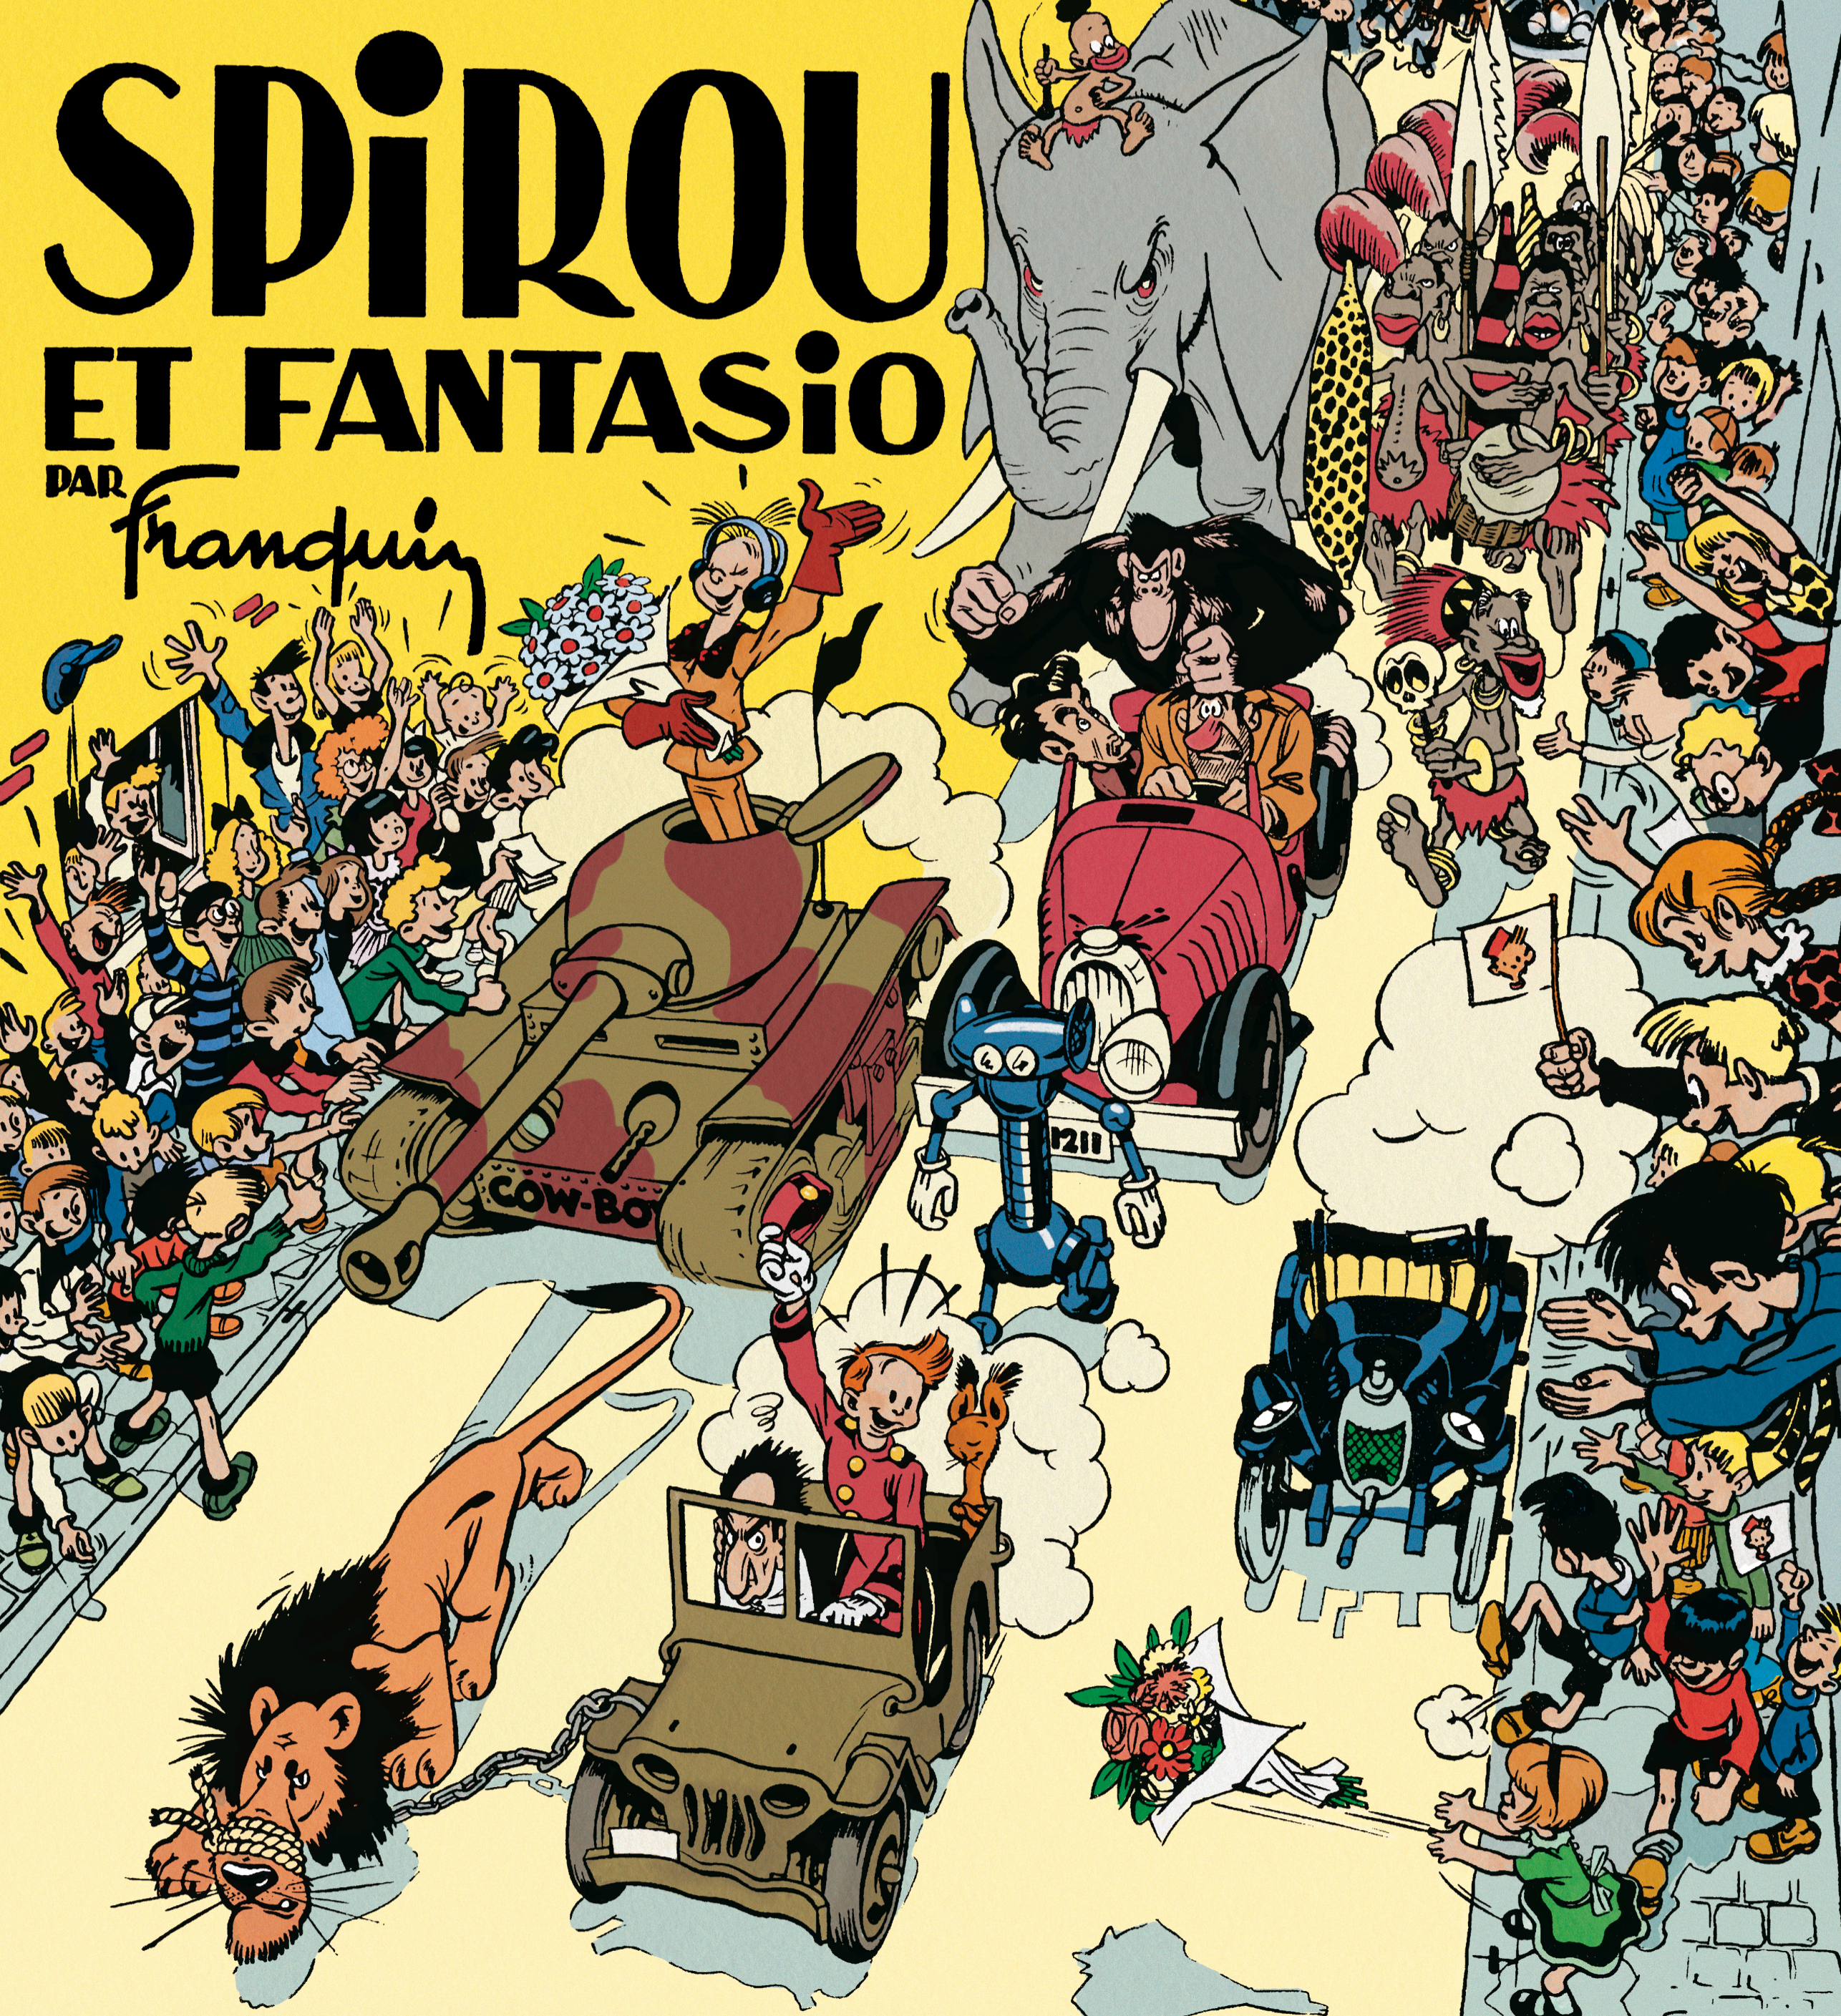 Spirou et Fantasio par Franquin (fac-similé édition 1948) – Tome 1 - couv